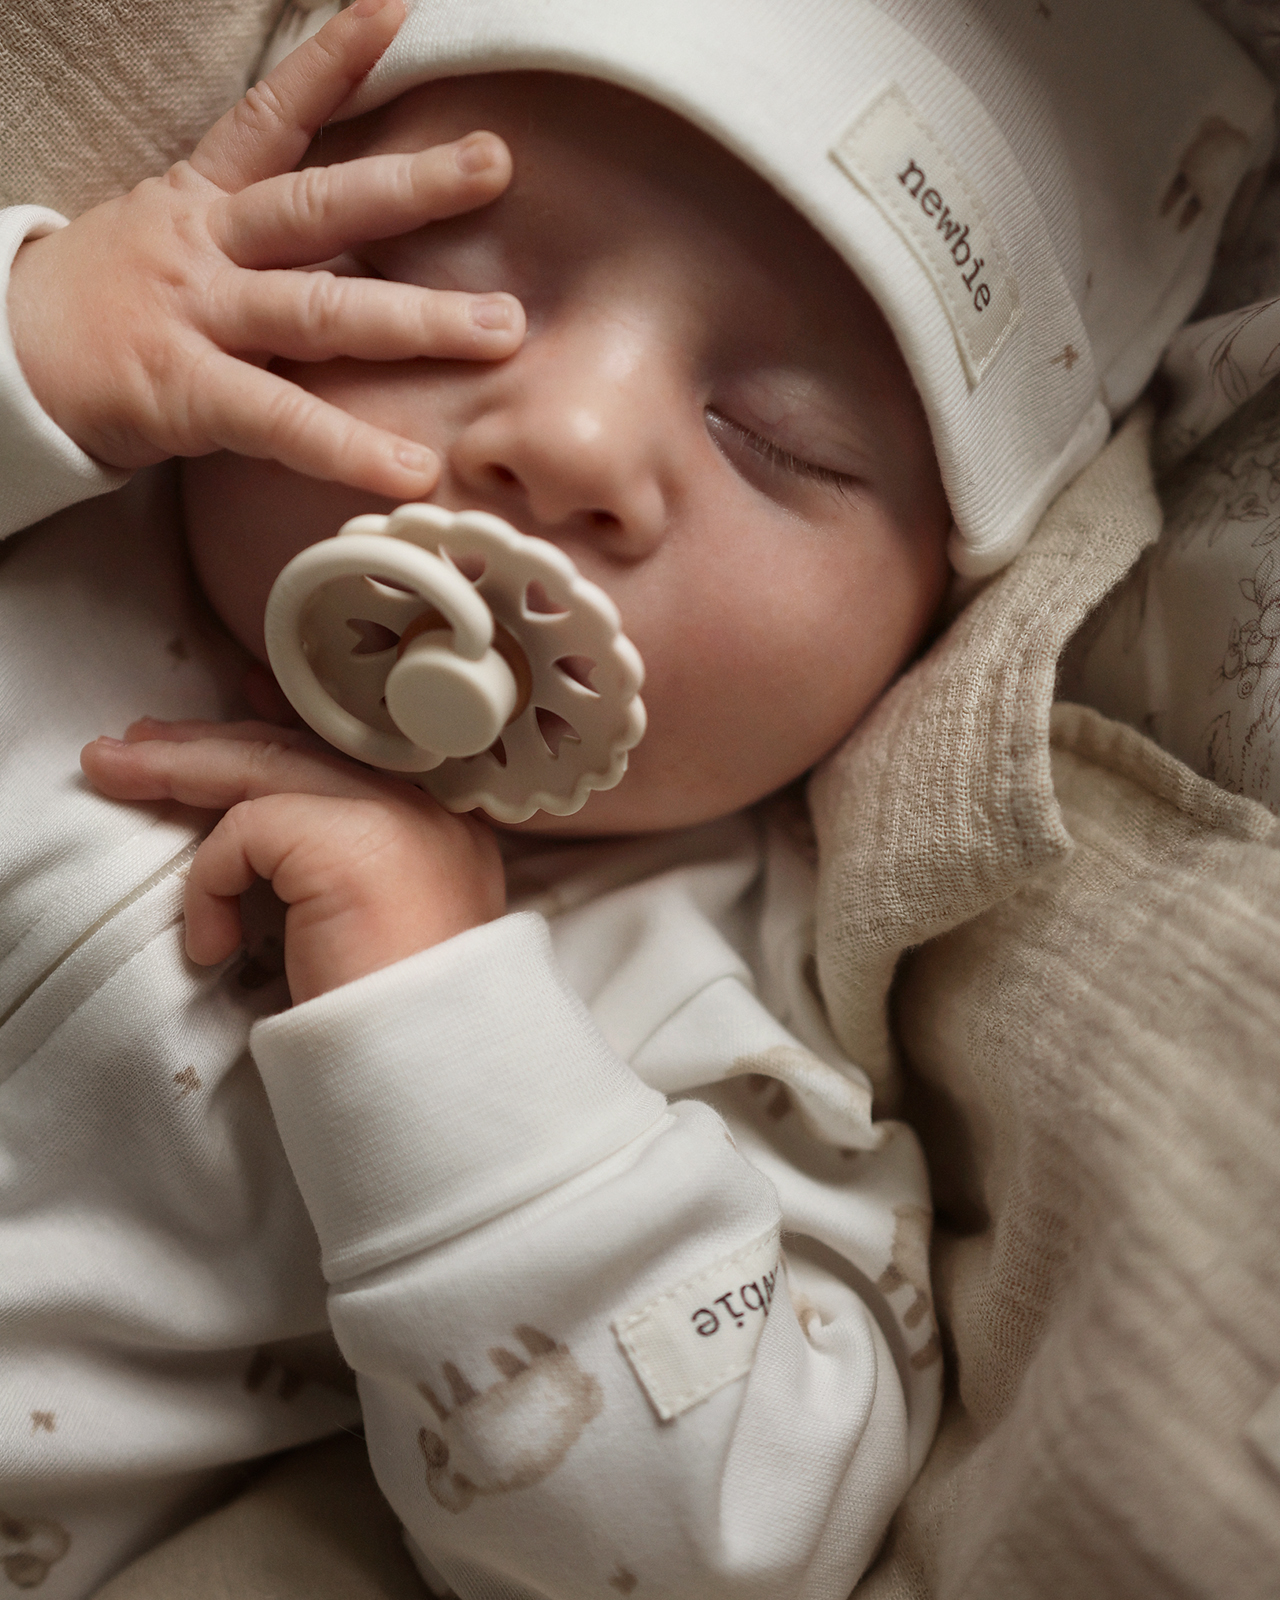 Baby i klær fra Newbie's kolleksjon mykt og koselig, lite lam.